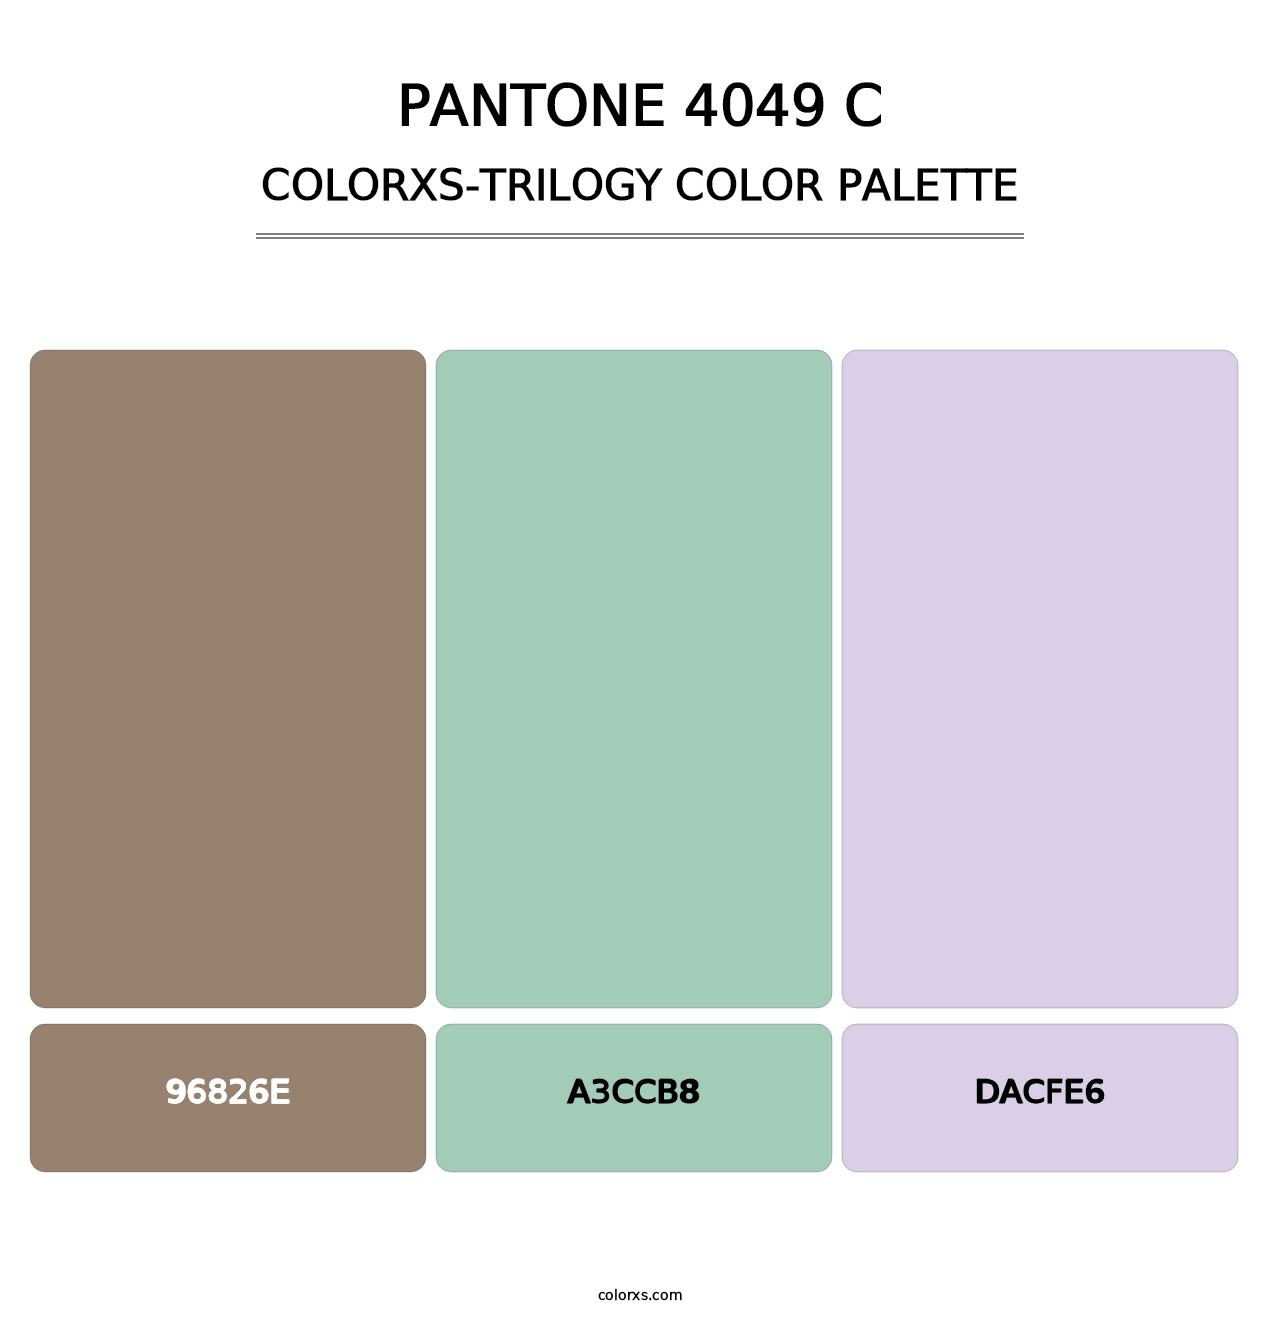 PANTONE 4049 C - Colorxs Trilogy Palette